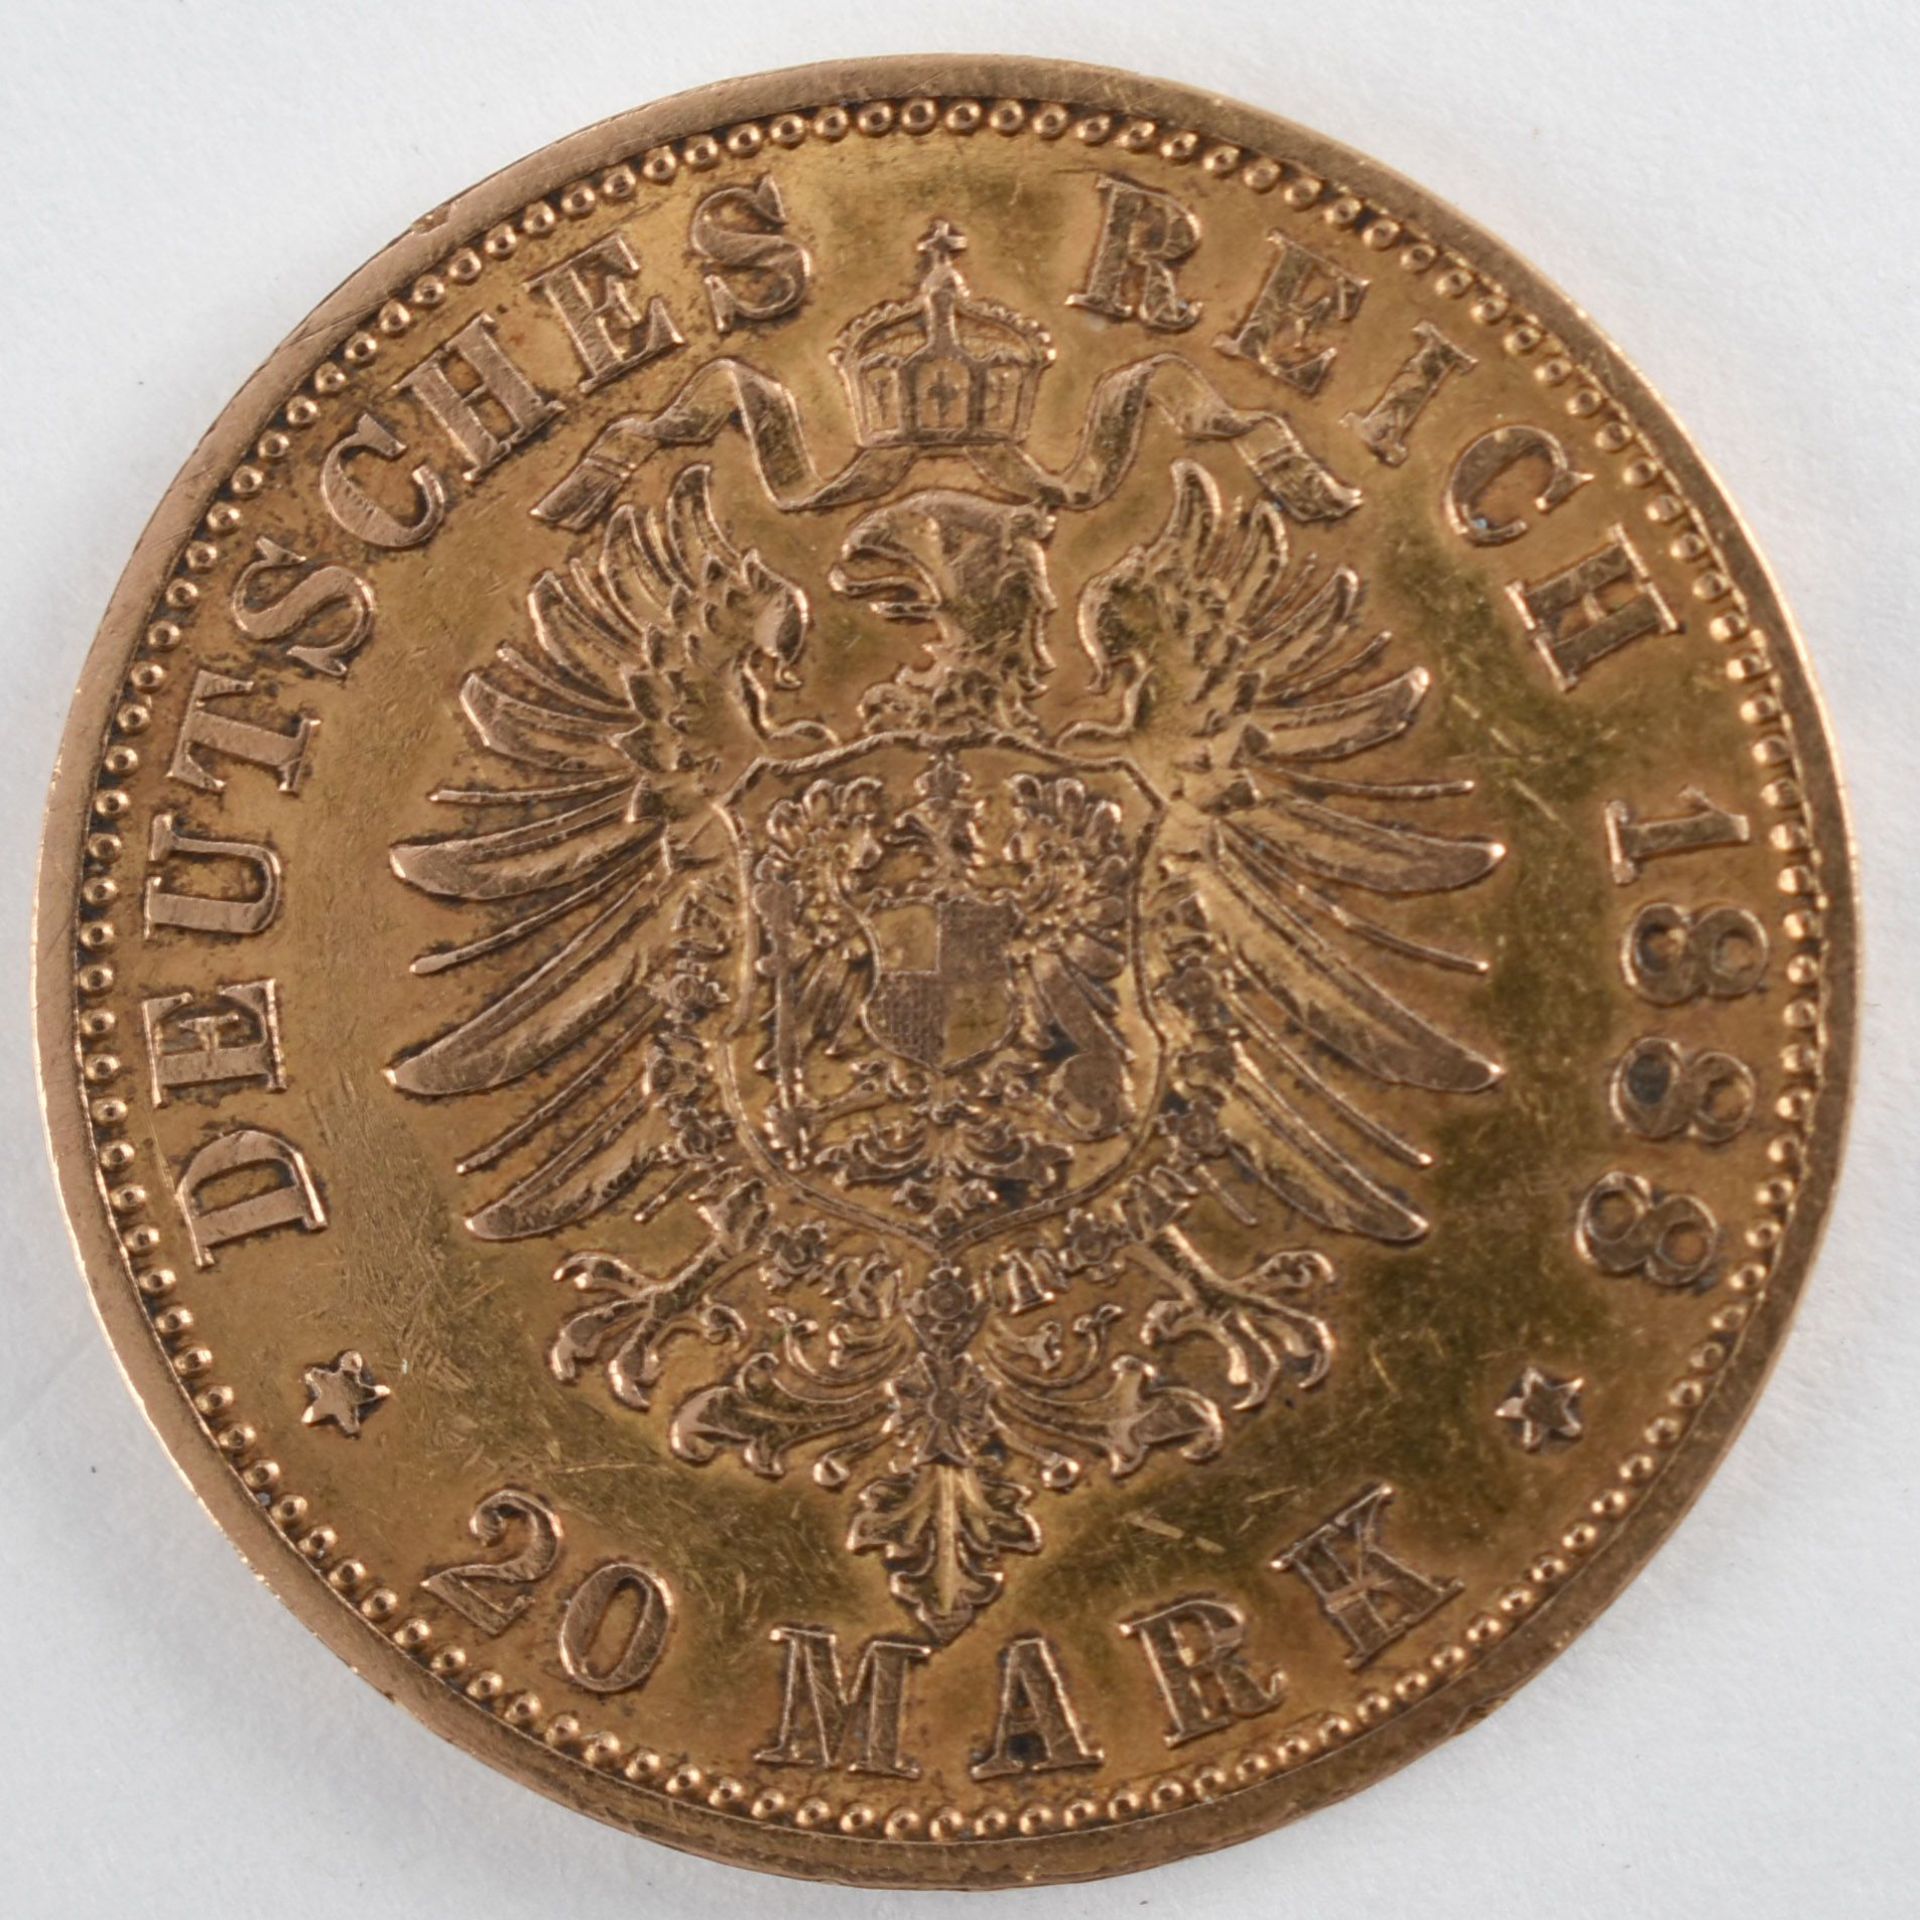 Goldmünze Preußen 1888 20 Mark in Gold, 900/1000, 7,96 g, D ca. 22,5 mm, av. Friedrich Deutscher - Image 3 of 3